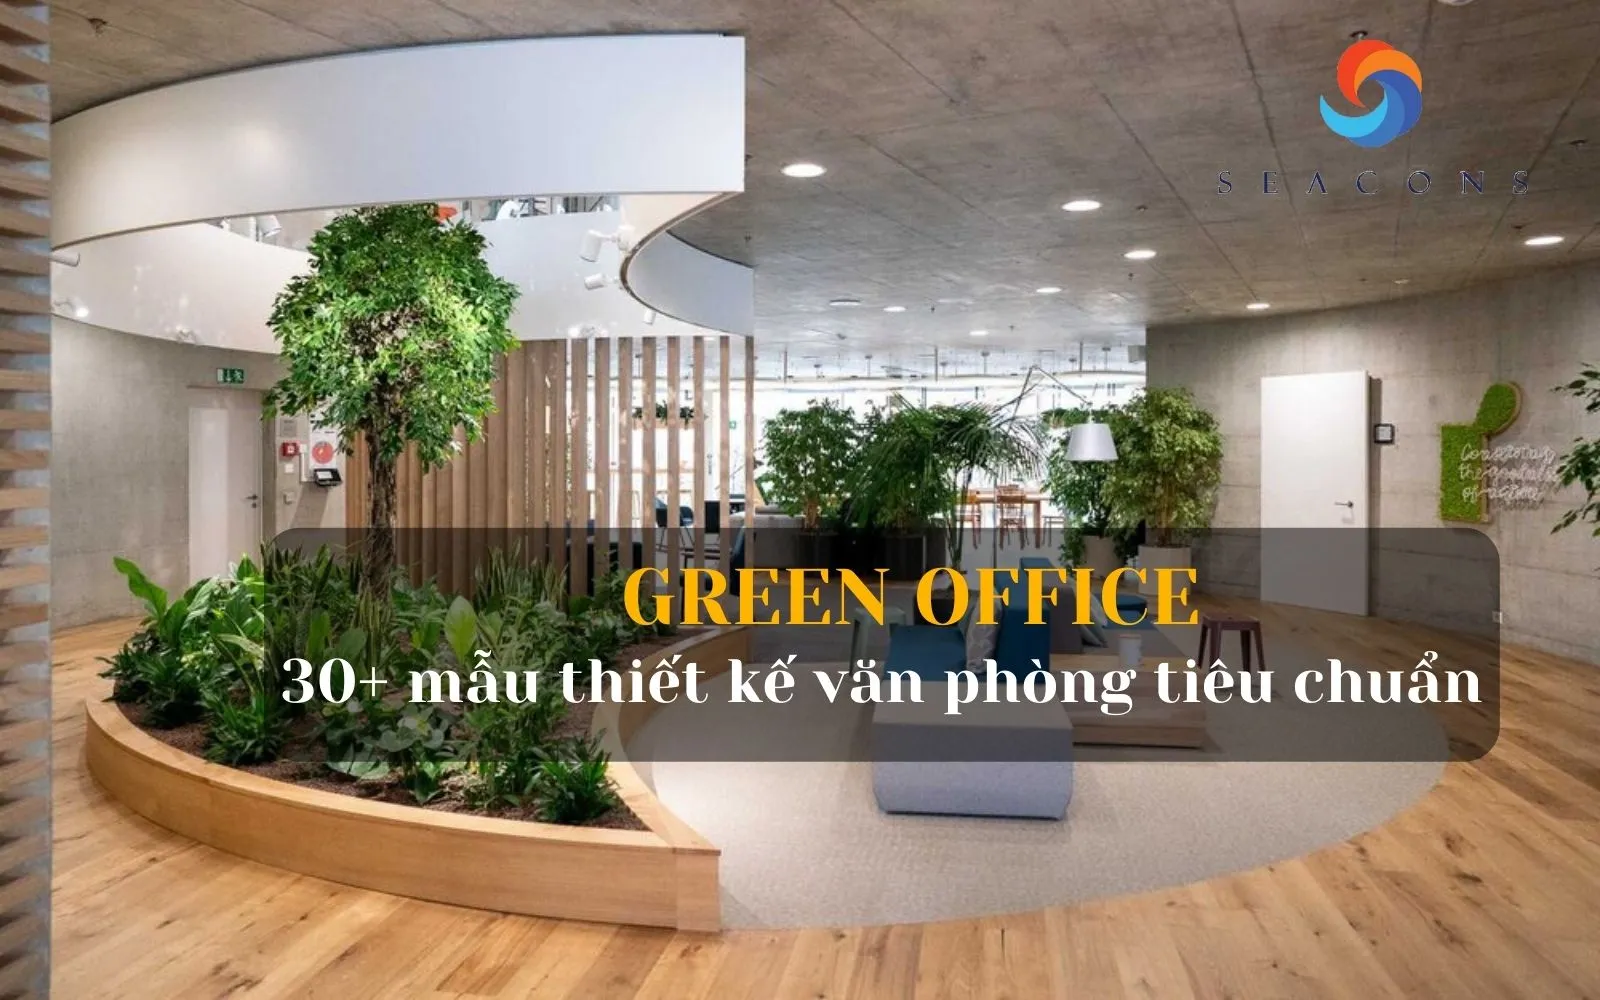 Green office là gì? Top 30+ Mẫu green office hiện đại đang là tiêu chuẩn cho phong cách thiết kế tương lai